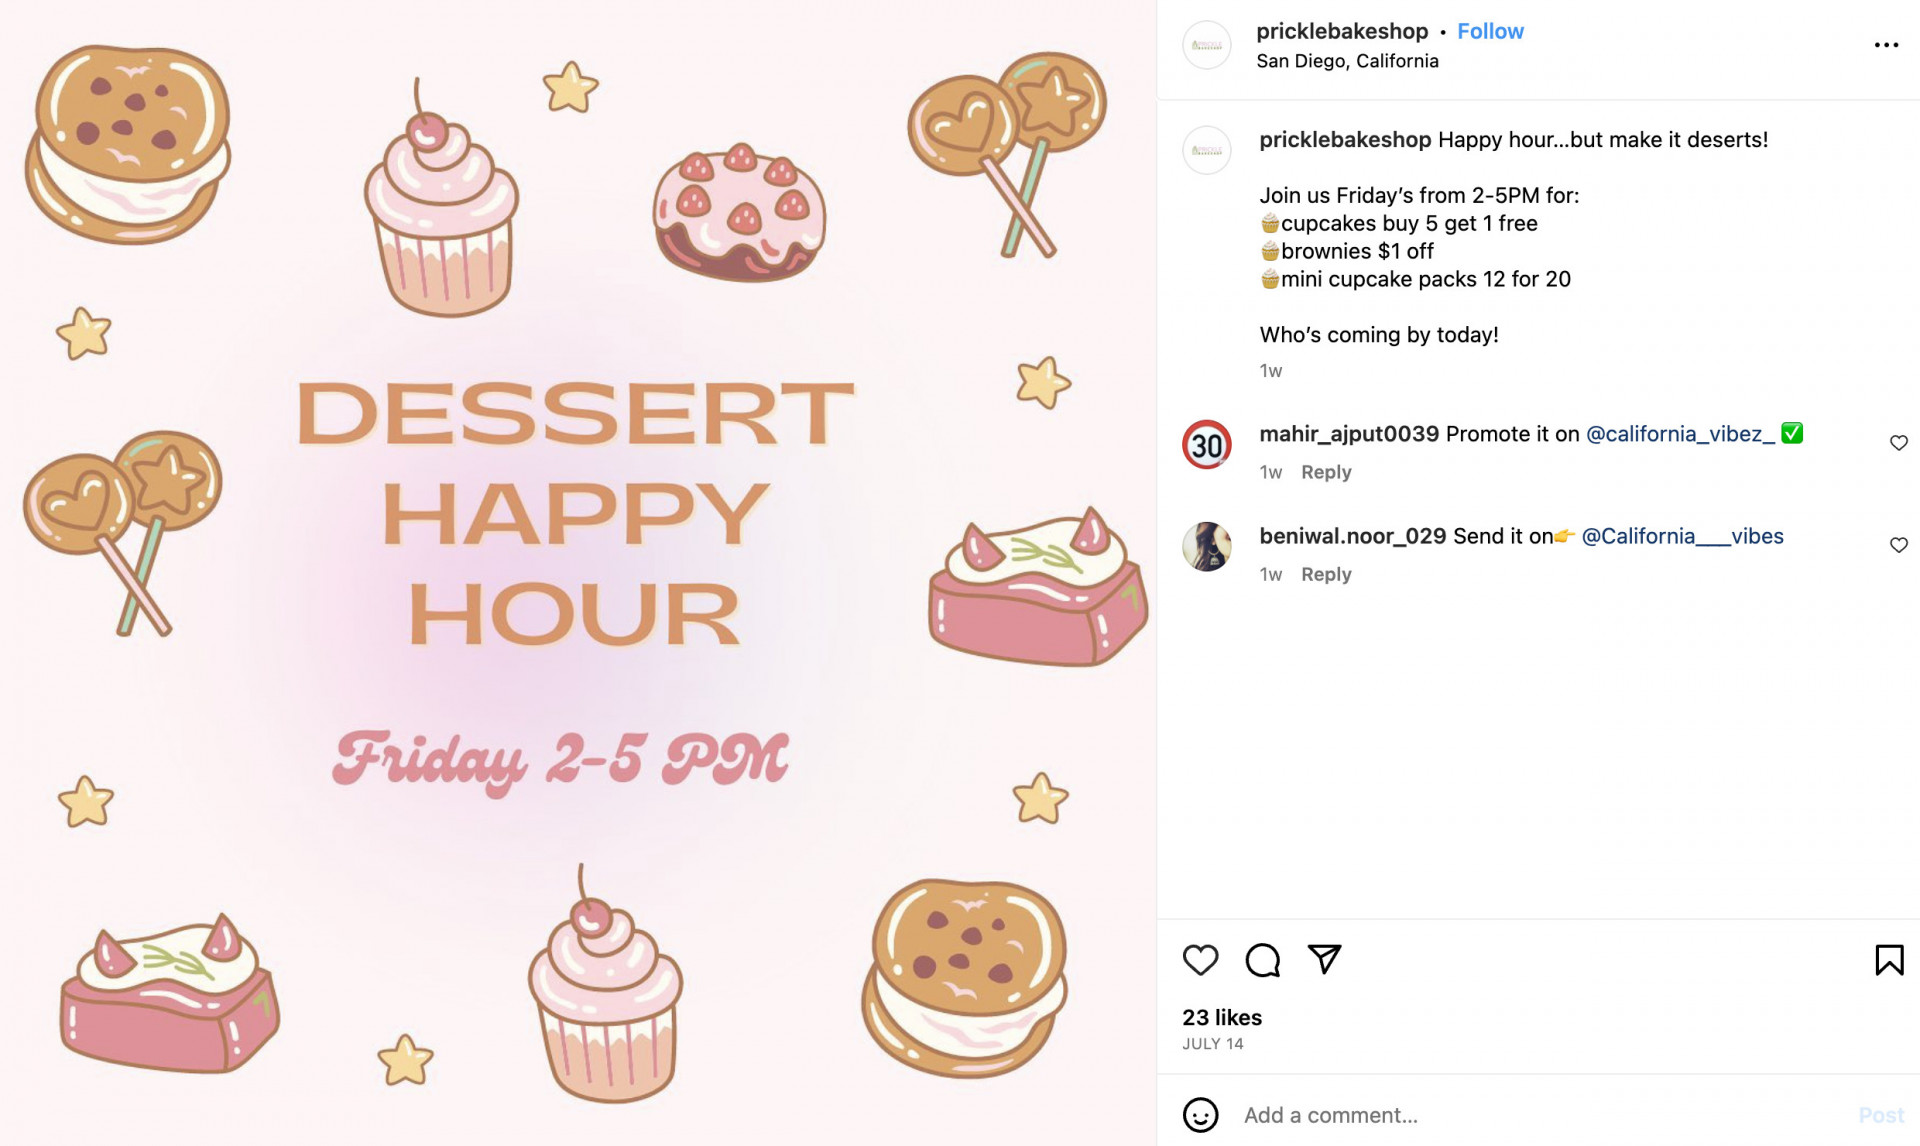  bakery-marketing ideas happy hour specials: example photo